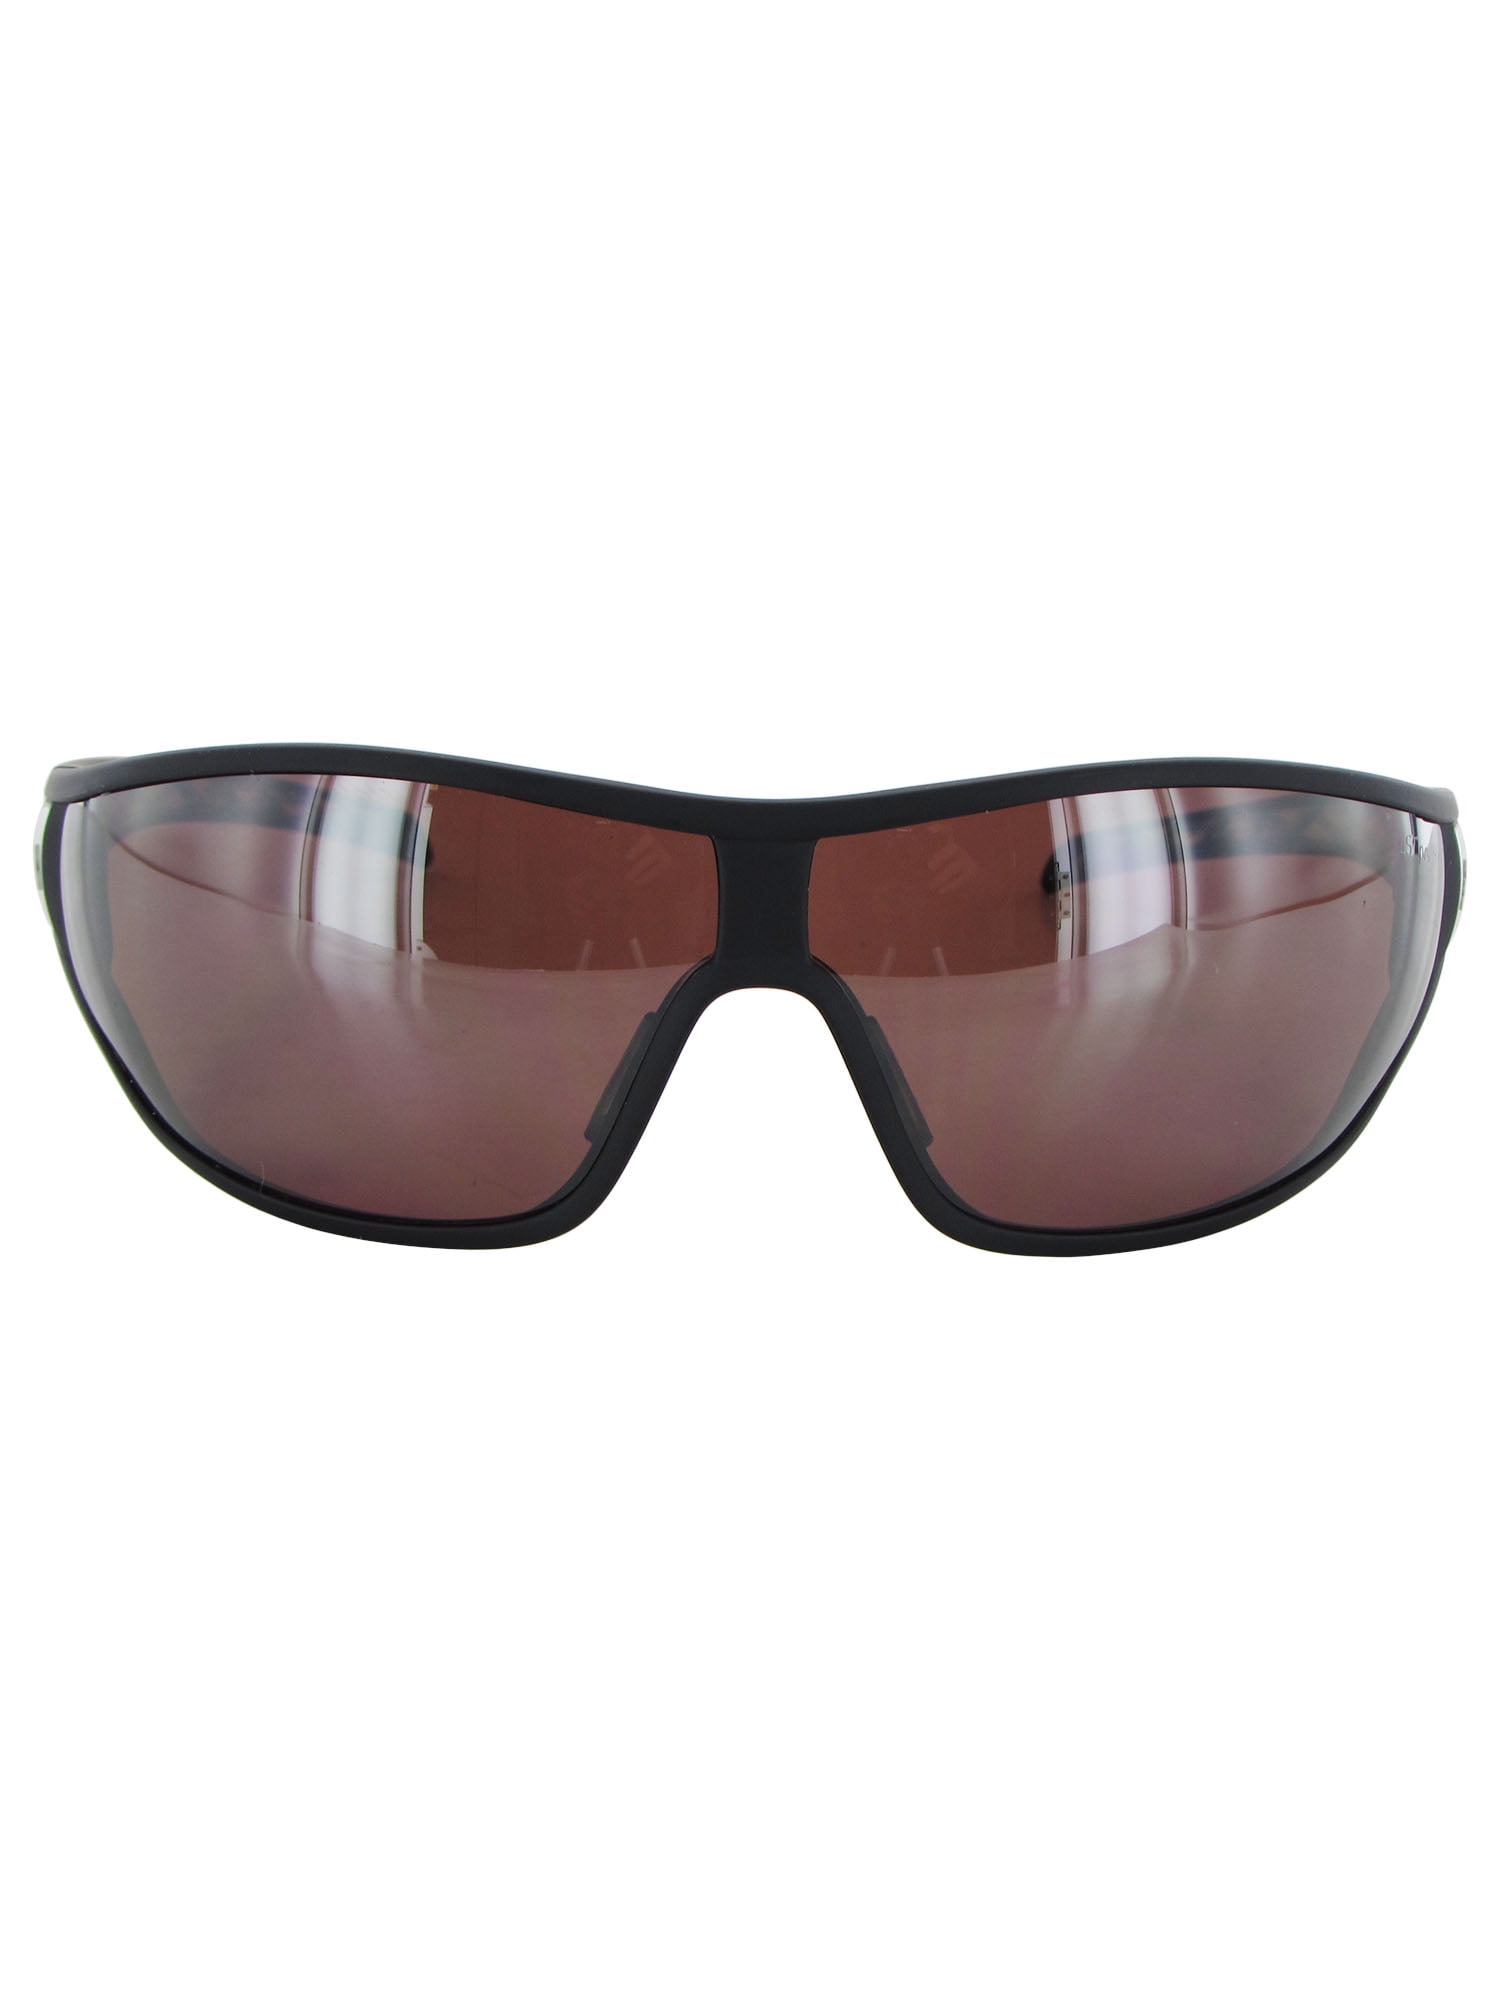 Excéntrico garra Mandíbula de la muerte Adidas Tycane Pro L Polarized Sunglasses, Matte Black/Lab Lime - Walmart.com